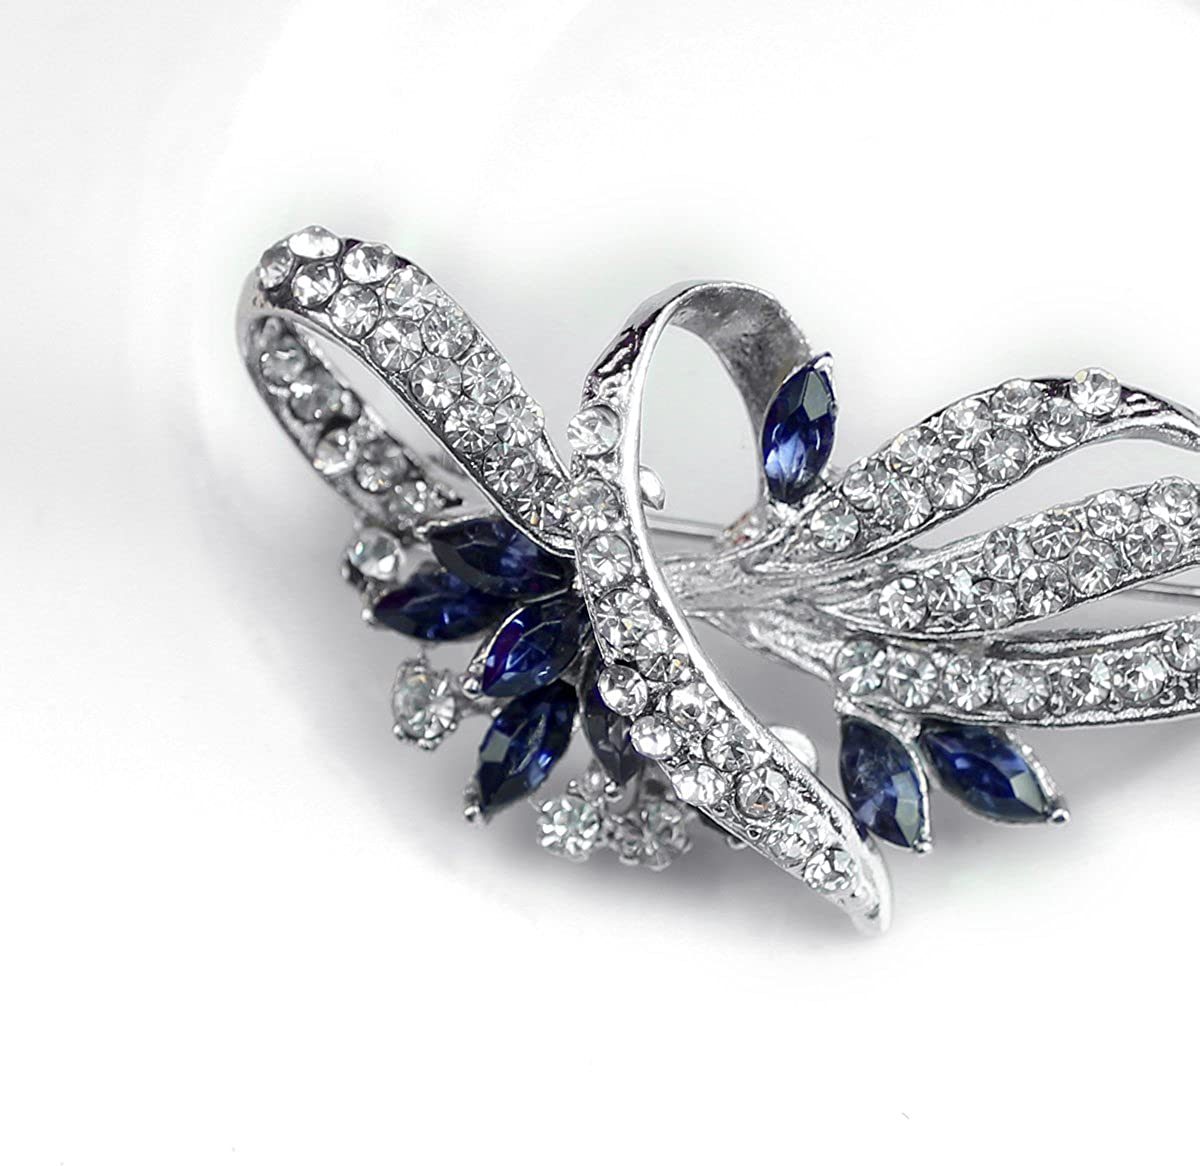 Merdia Created Crystal Brooch Fancy Vintage Style Flower Brooch Pin for Women, girls, ladies Blue color